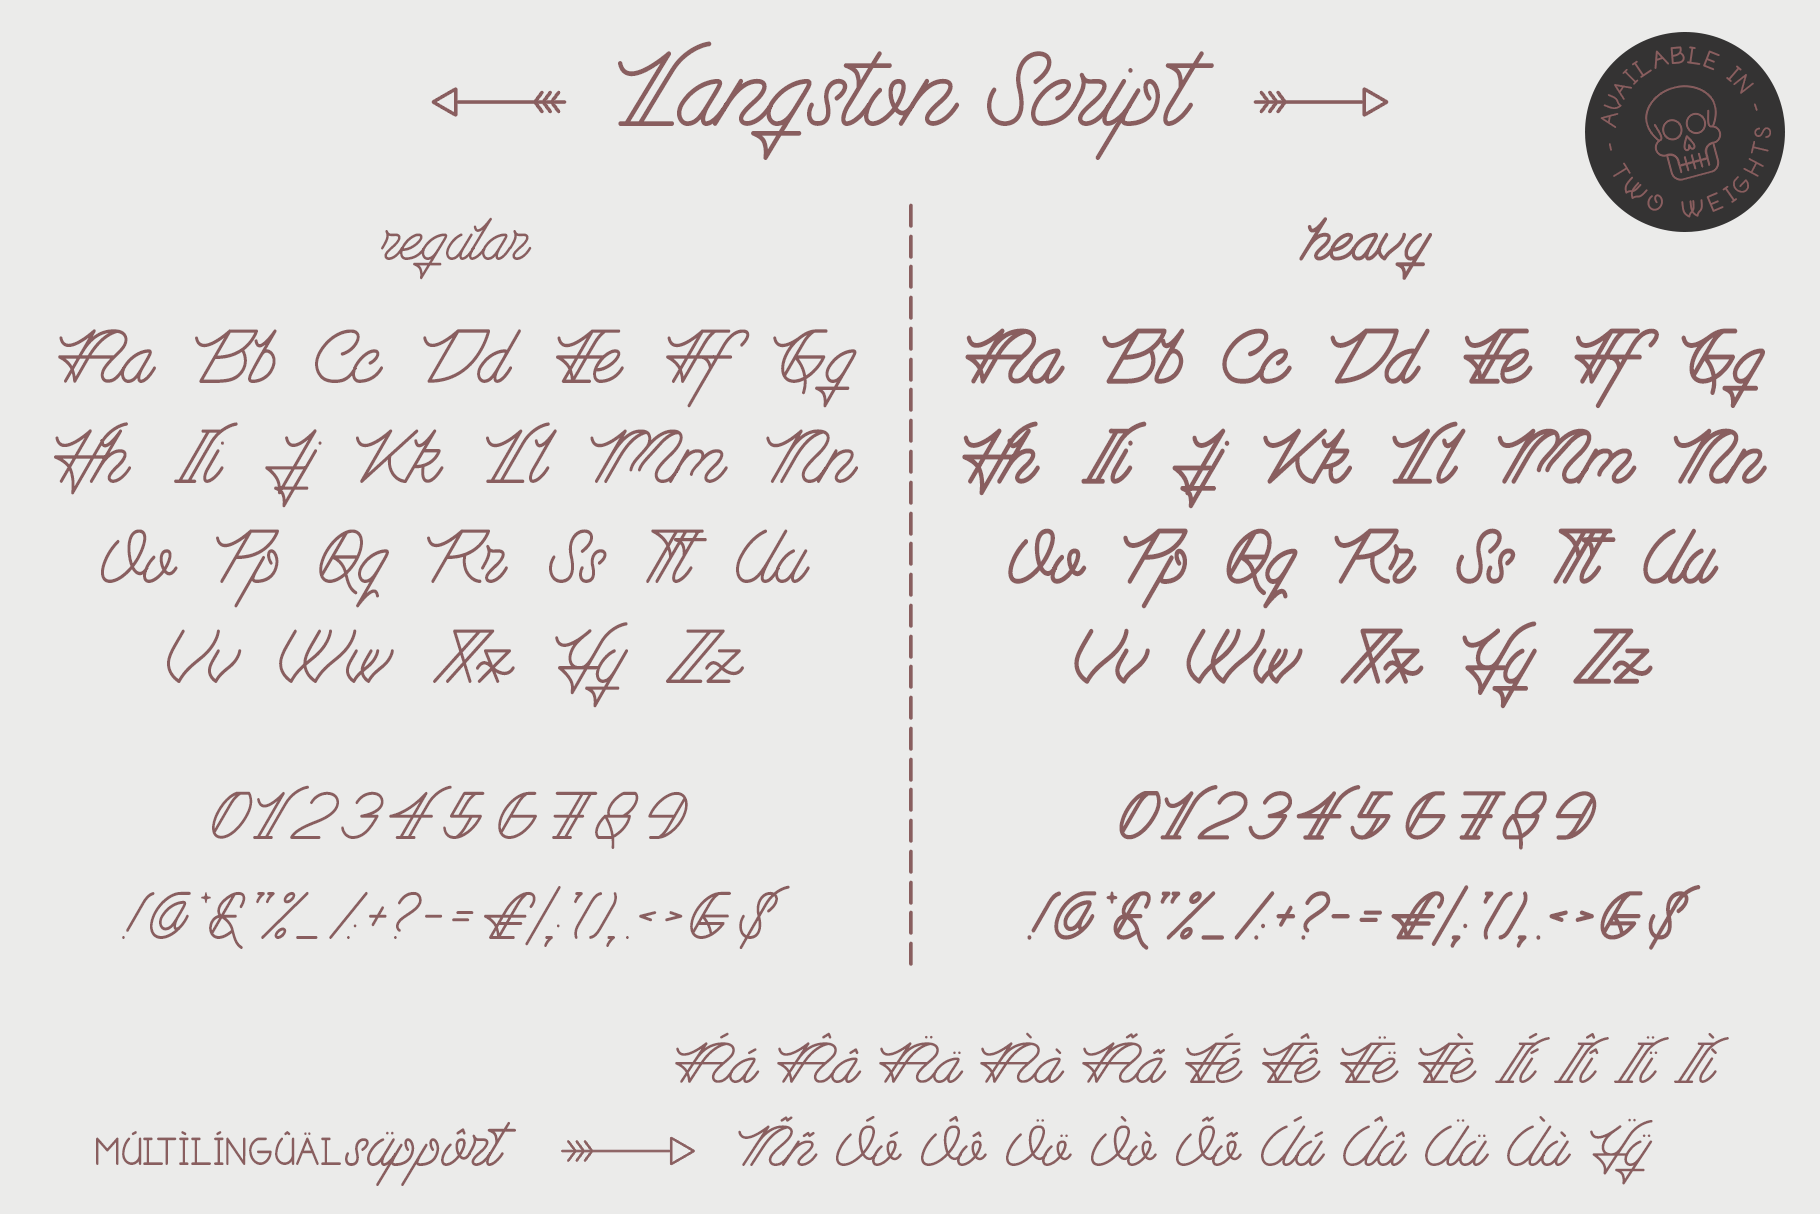 Langston Script Sans By Design Surplus Thehungryjpeg Com